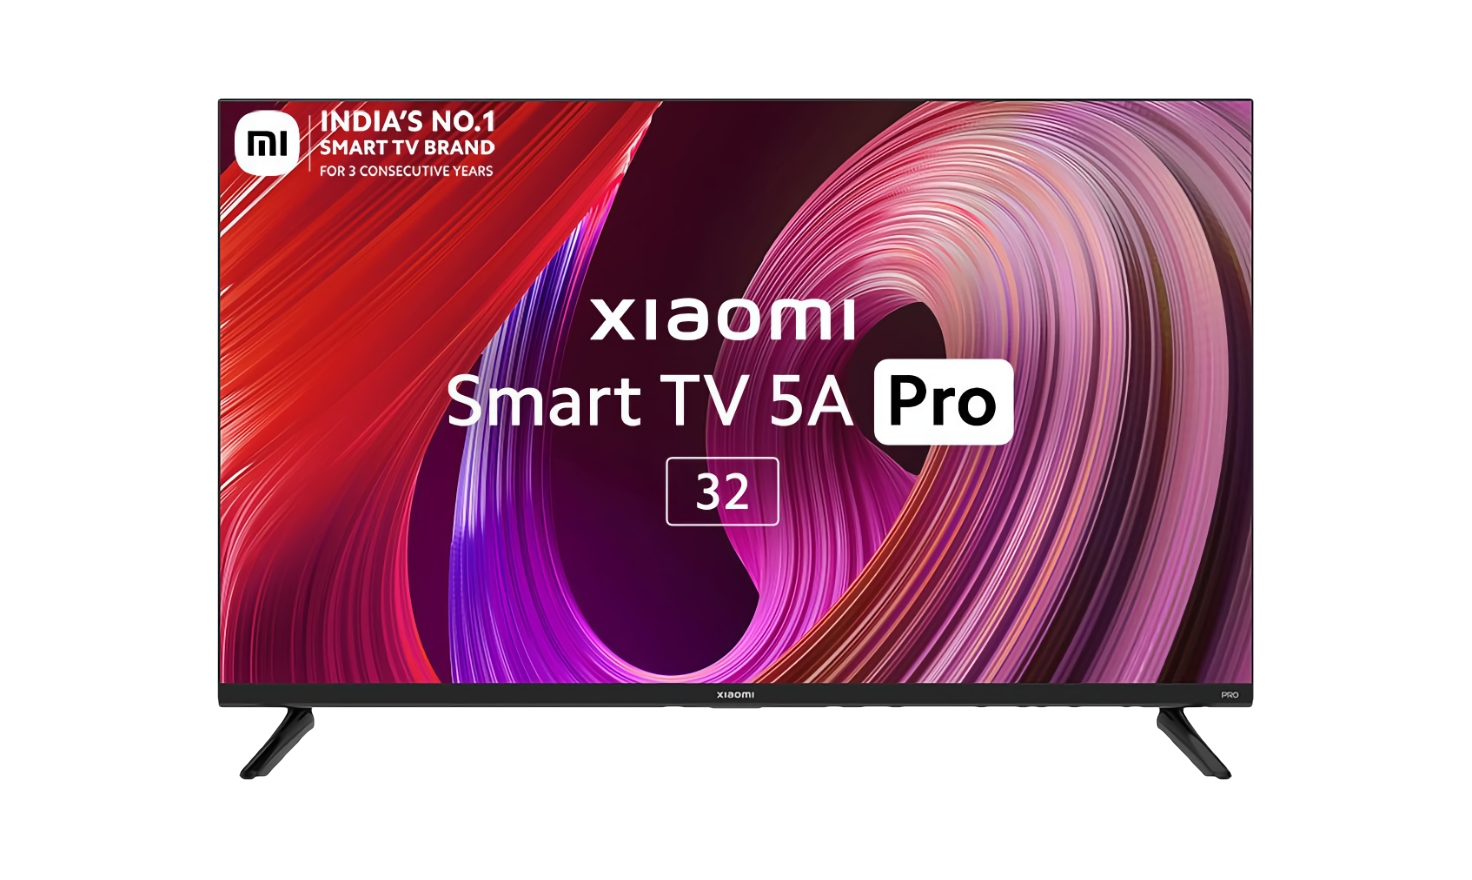 Xiaomi wprowadziło 32-calowy telewizor Smart TV 5A Pro z głośnikami 24W, 1,5 GB pamięci RAM i Android TV na pokładzie za 215 USD